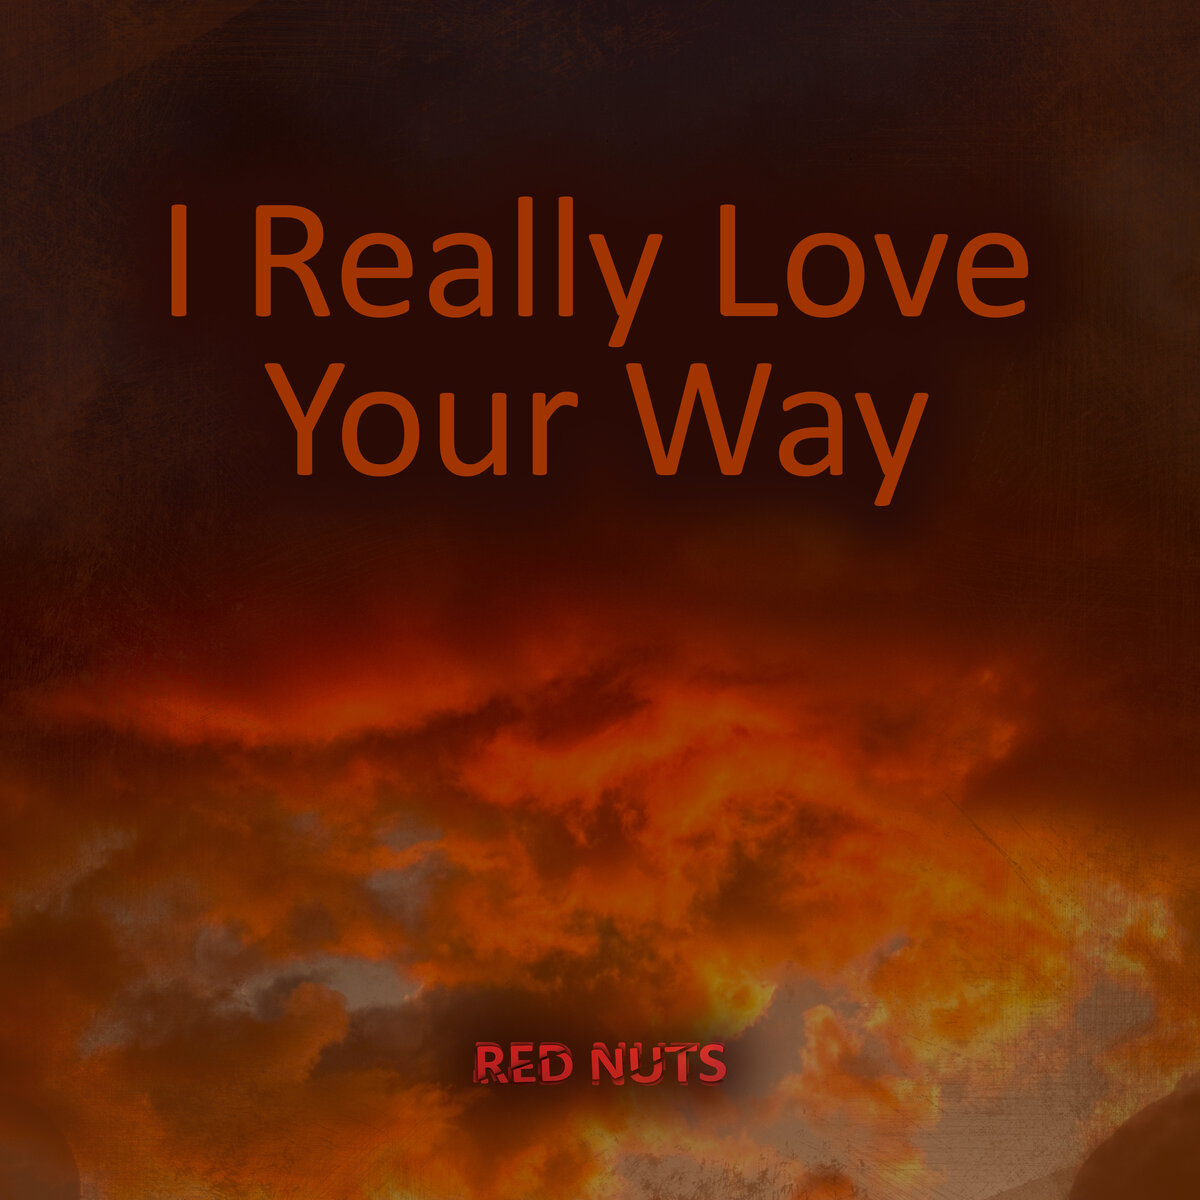 Release Day. Red Nuts. I Really Love Your Way. EP. Ломаный бит бывает разный. Бывает жесткий, агрессивный. Бывает хулиганский, весёлый.-2